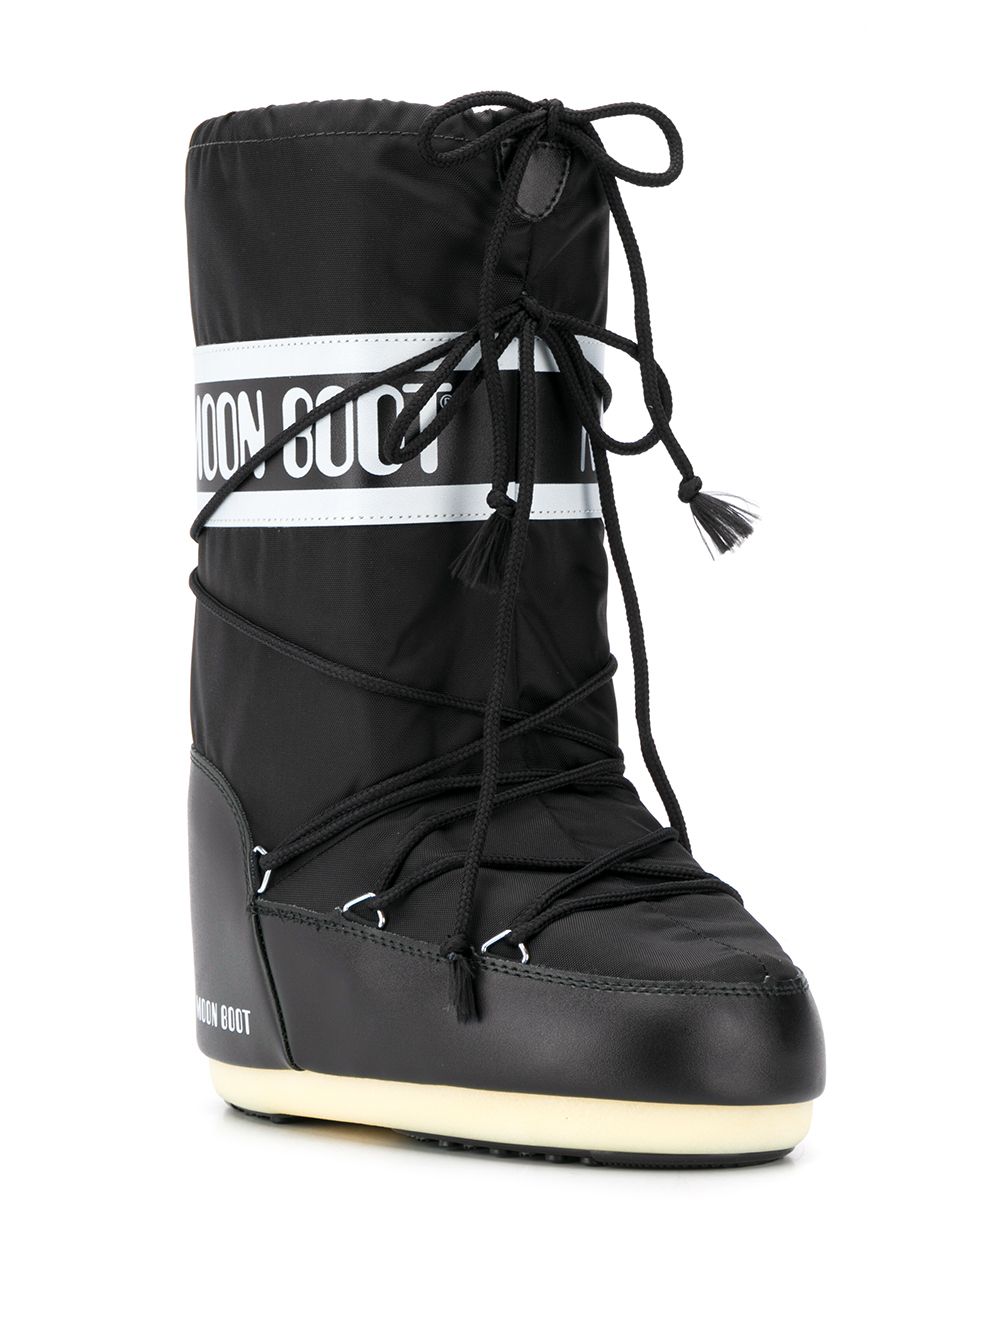 фото Moon boot сапоги со шнурками и логотипом